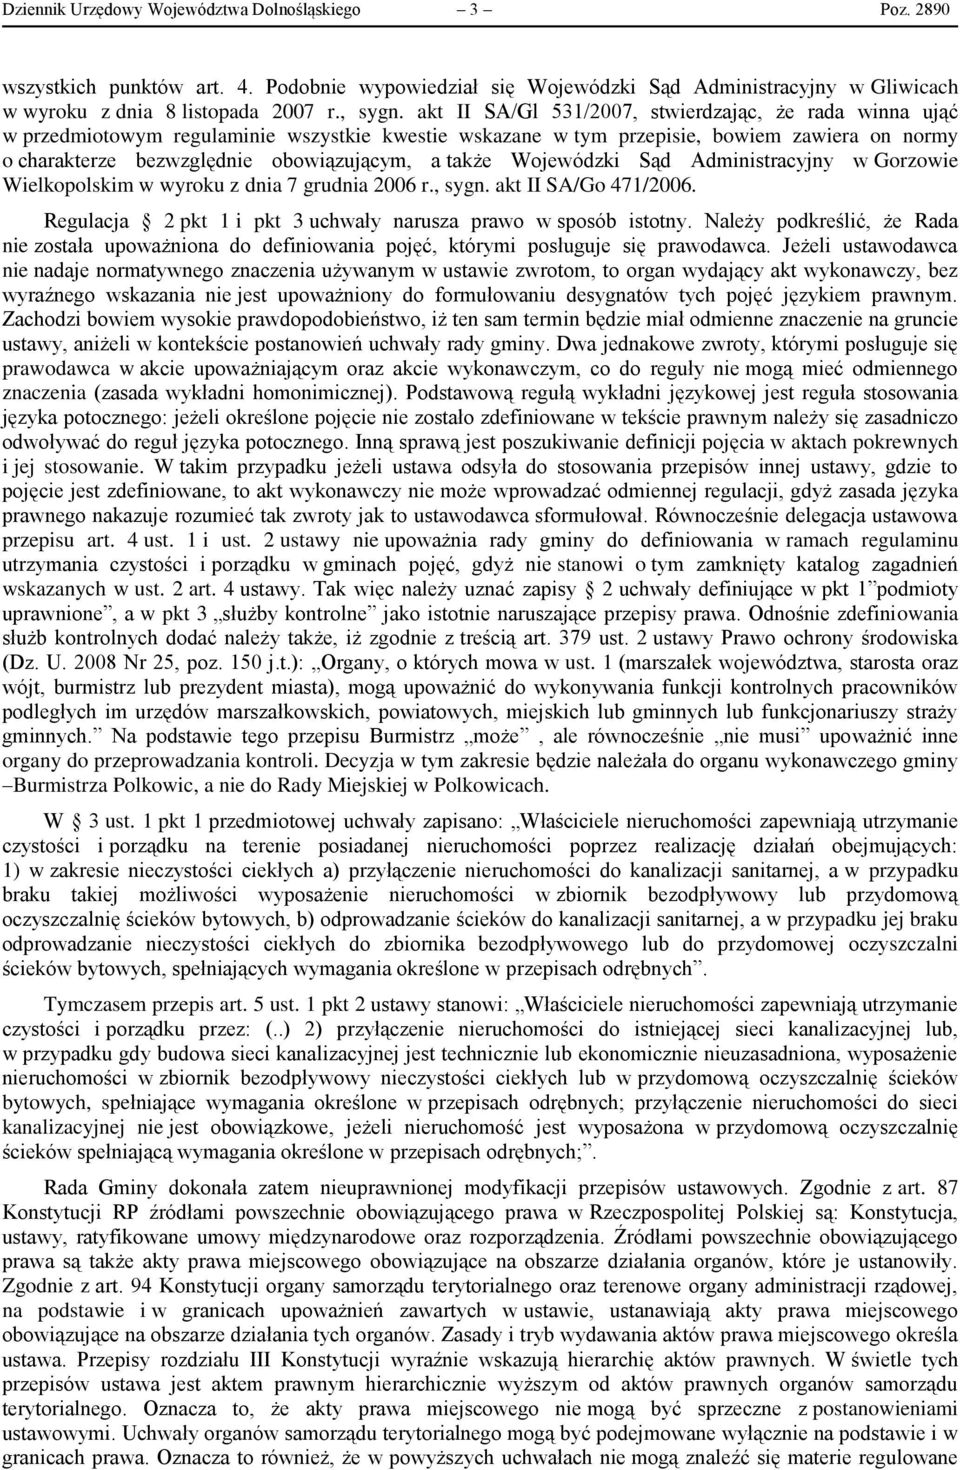 także Wojewódzki Sąd Administracyjny w Gorzowie Wielkopolskim w wyroku z dnia 7 grudnia 2006 r., sygn. akt II SA/Go 471/2006. Regulacja 2 pkt 1 i pkt 3 uchwały narusza prawo w sposób istotny.